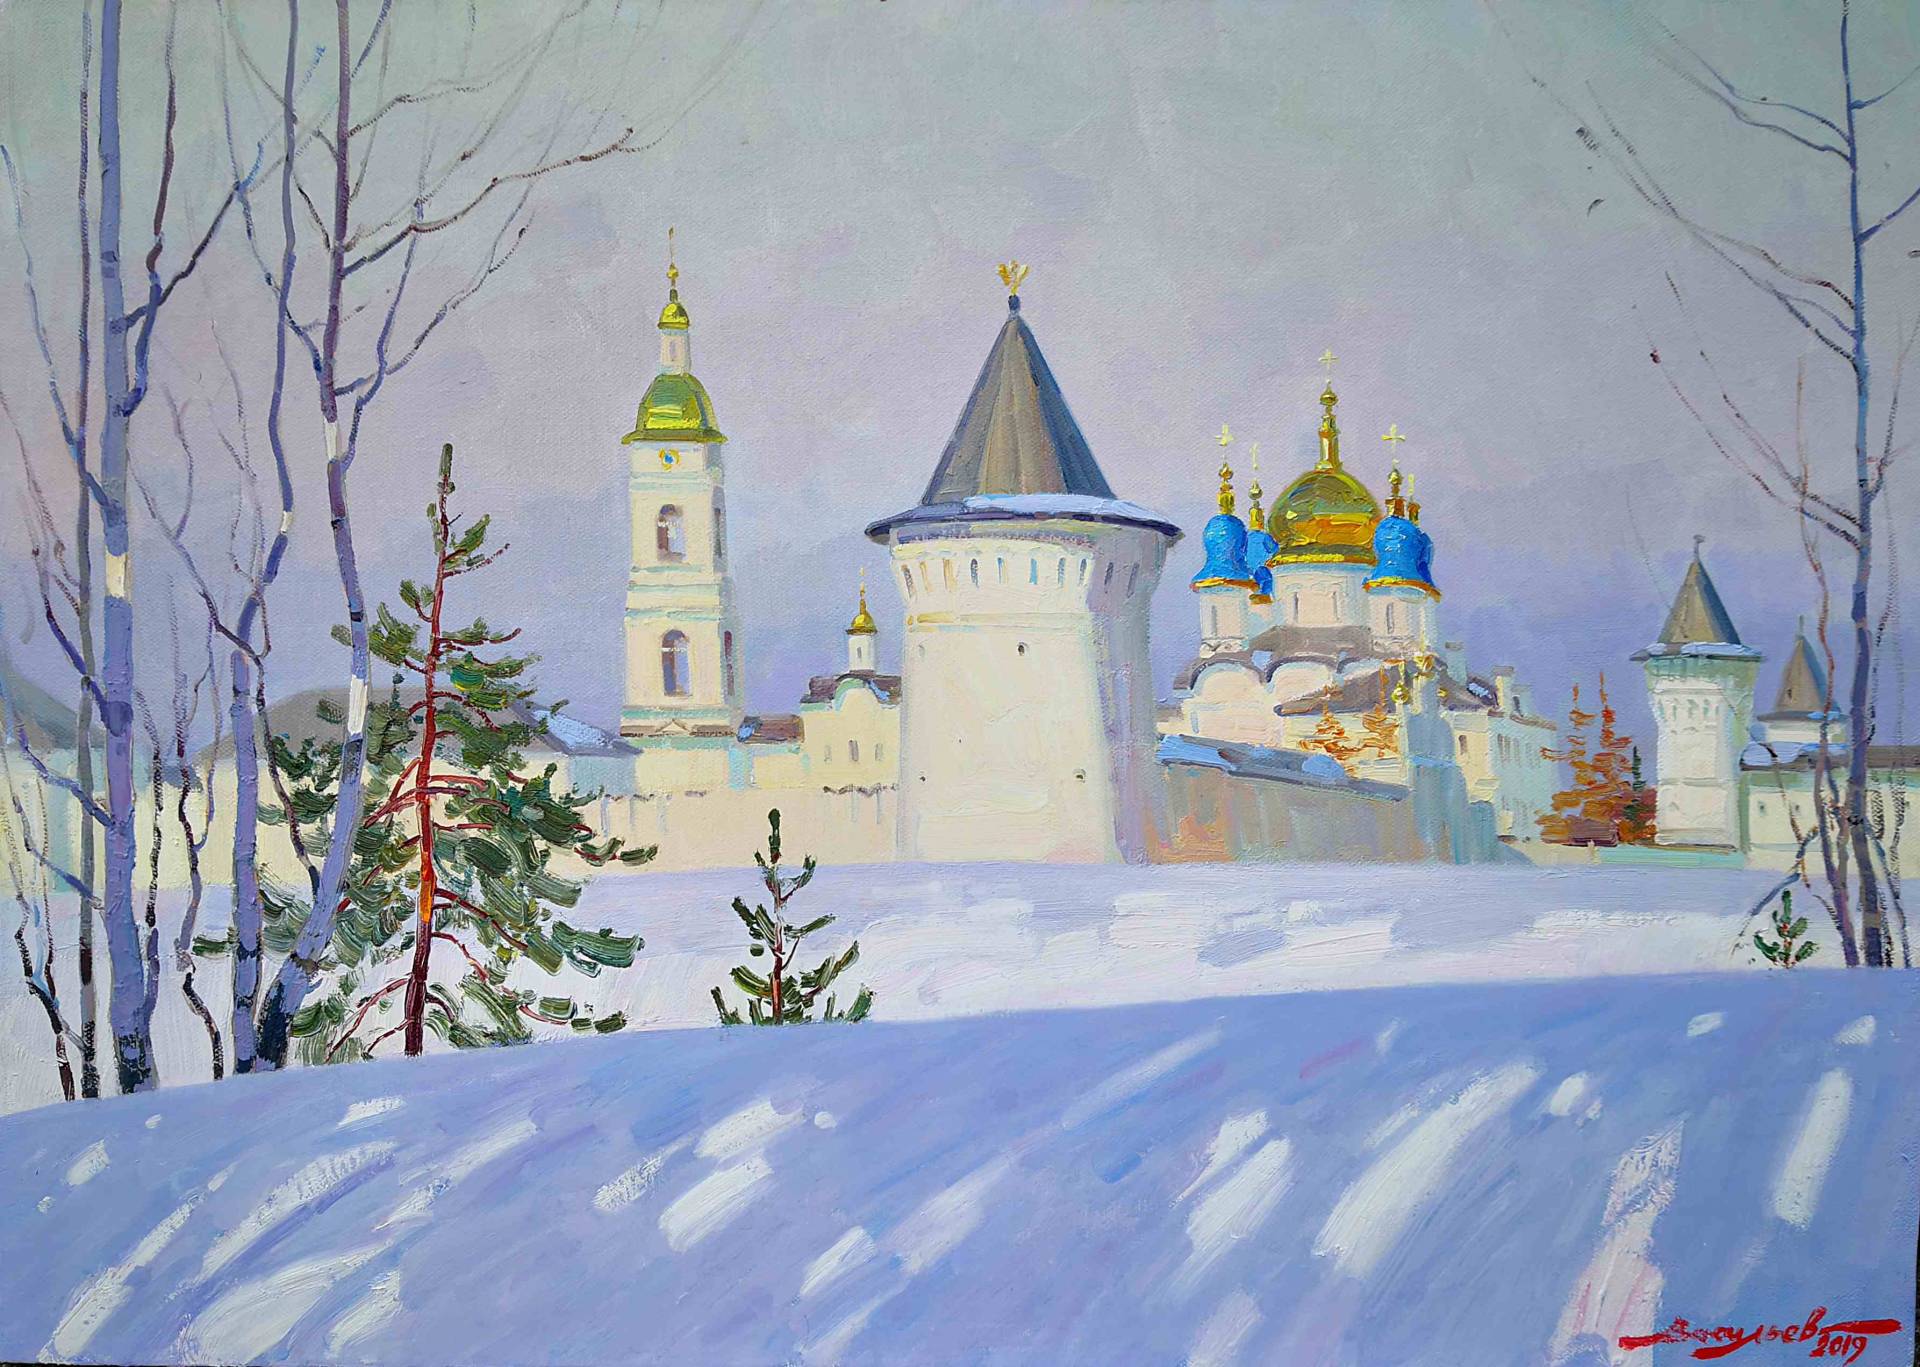 Siberian stronghold - 1, Dmitry Vasiliev, Buy the painting Oil